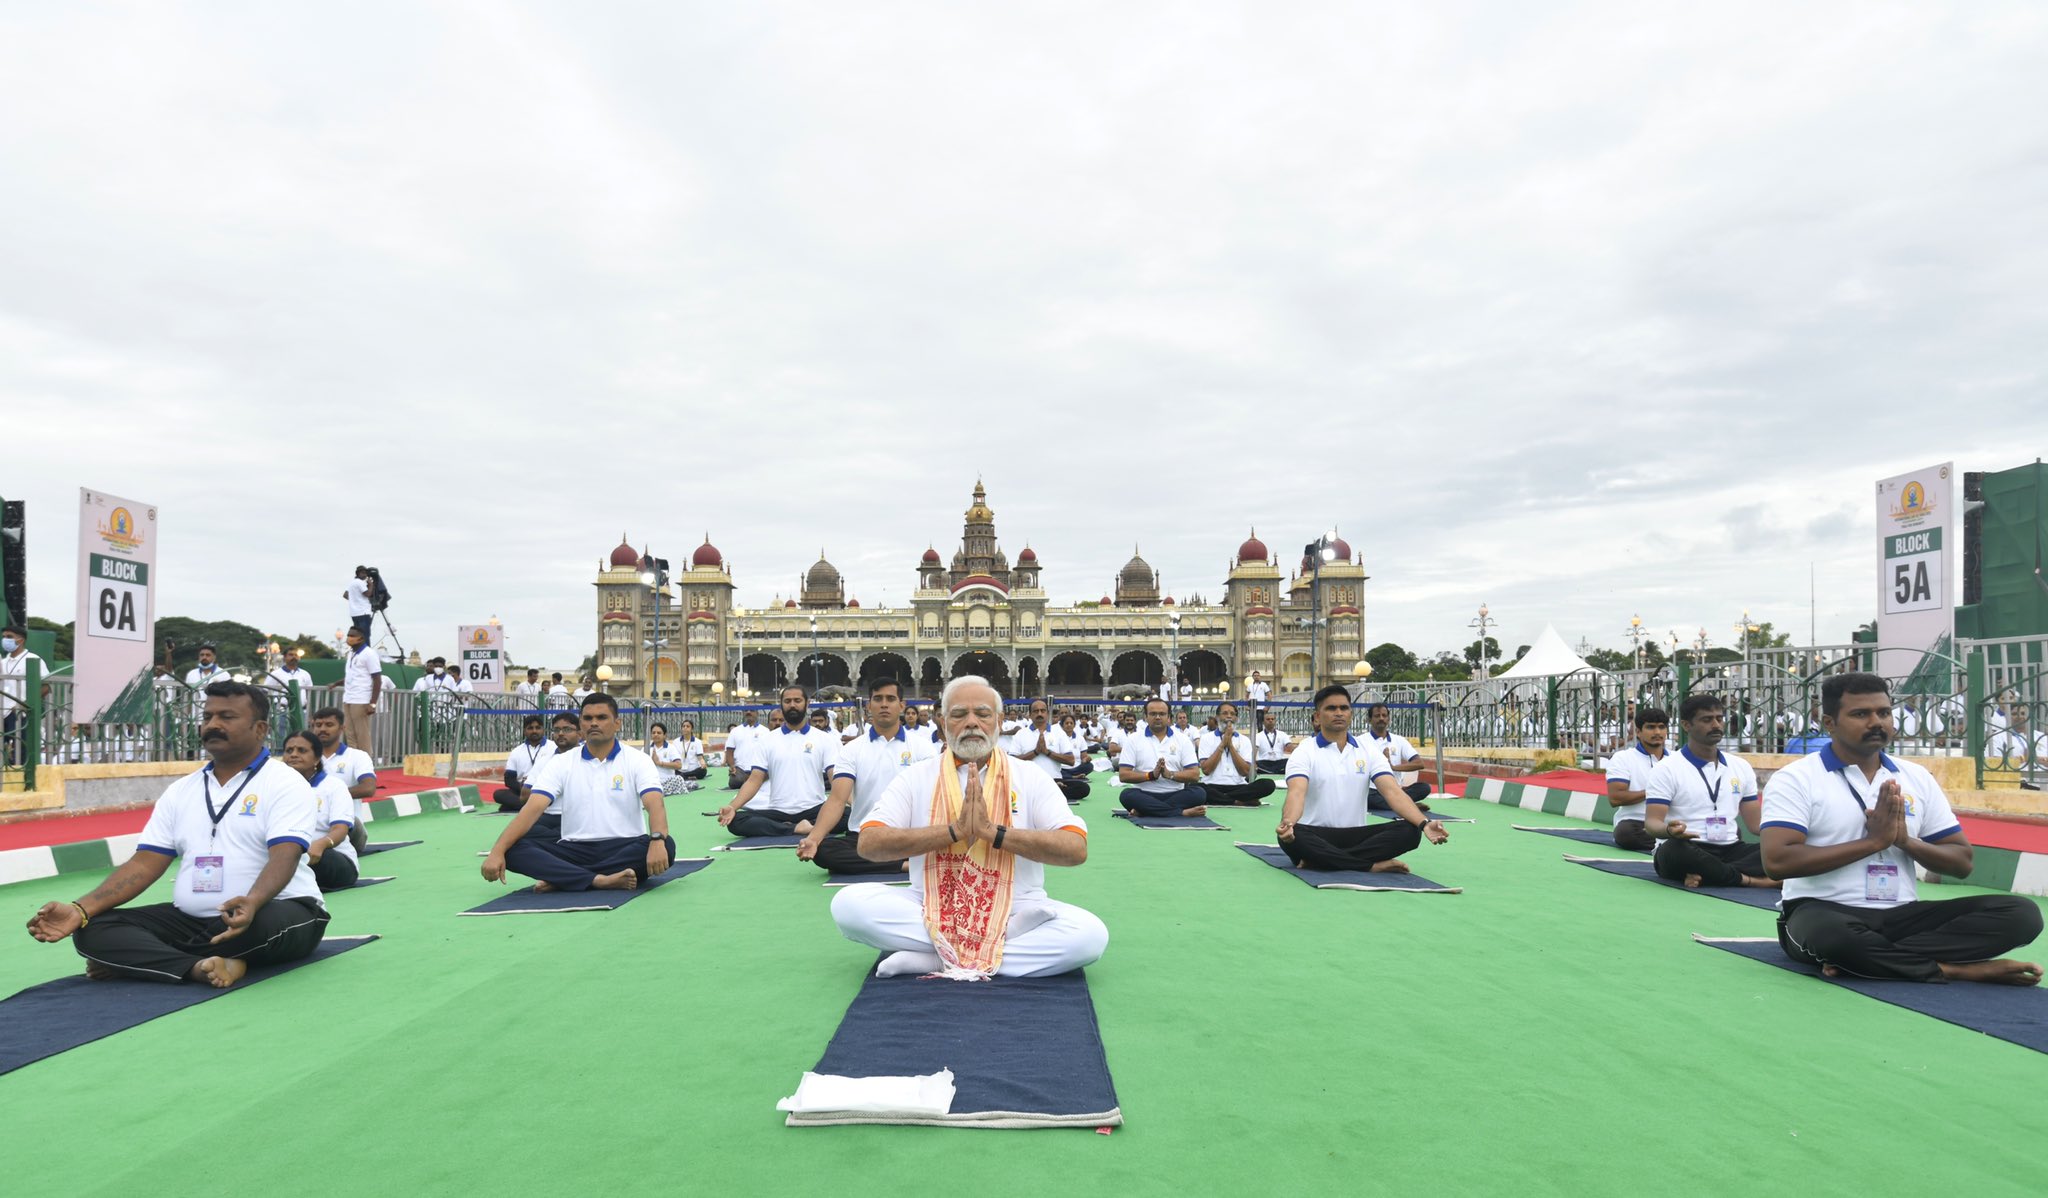 India celebrates International Day of Yoga 2022.